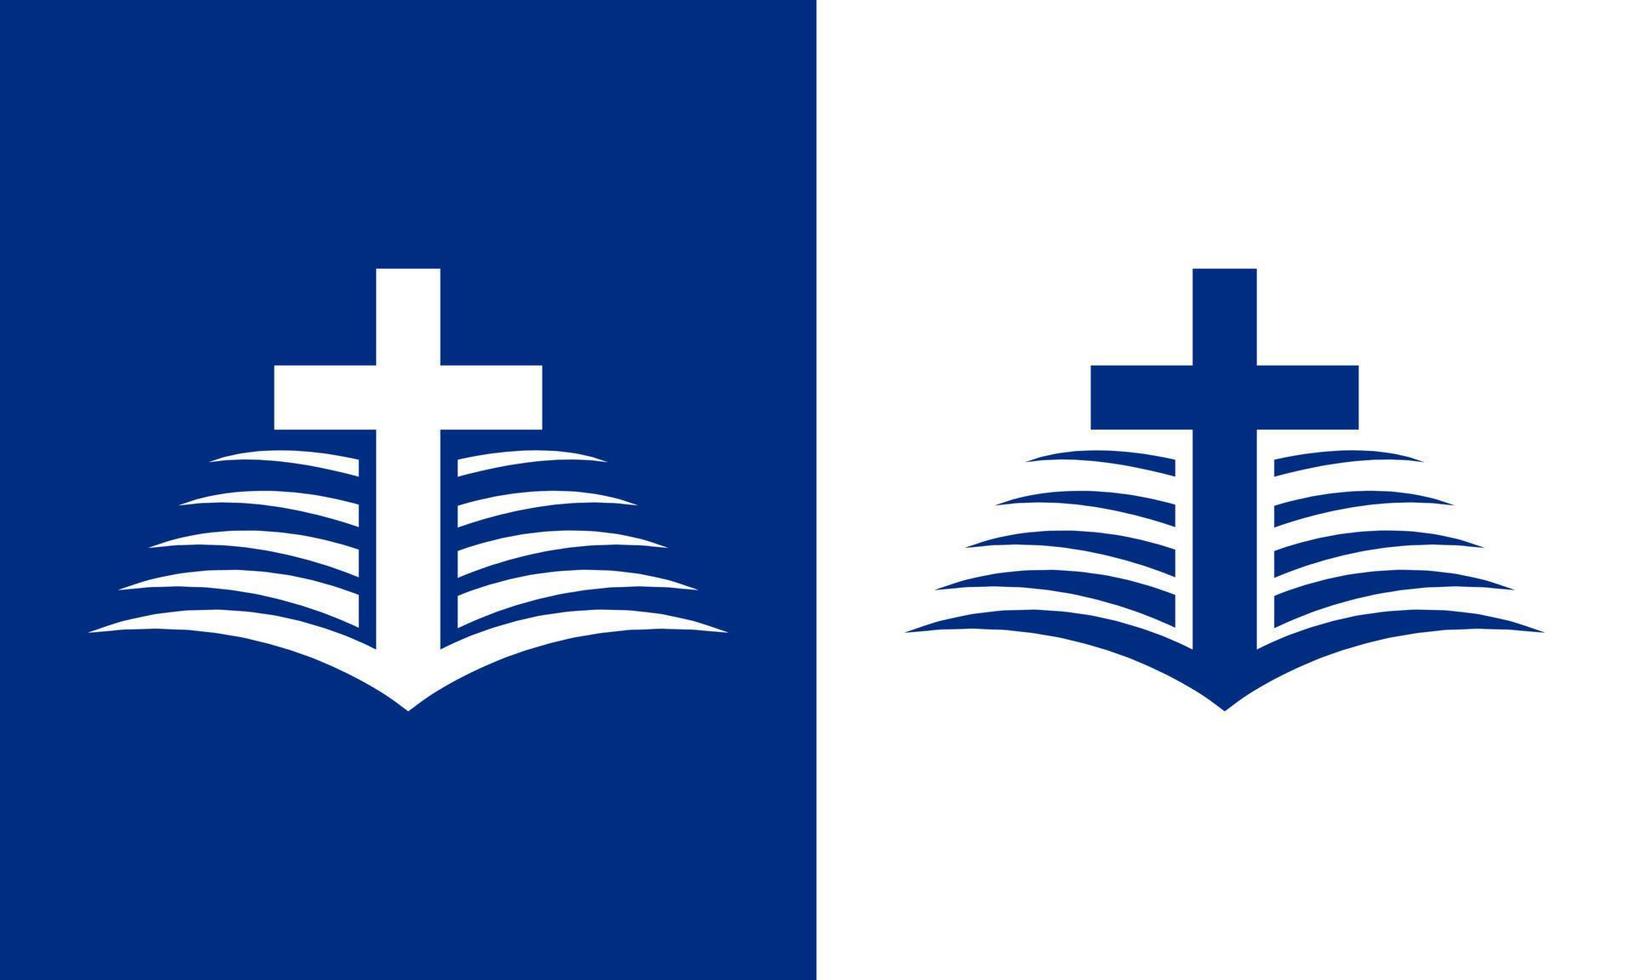 Biblia y cruzar logo en sombras de azul. eso es adecuado para logos de iglesias, organizaciones, movimientos, comunidades, y otros. vector